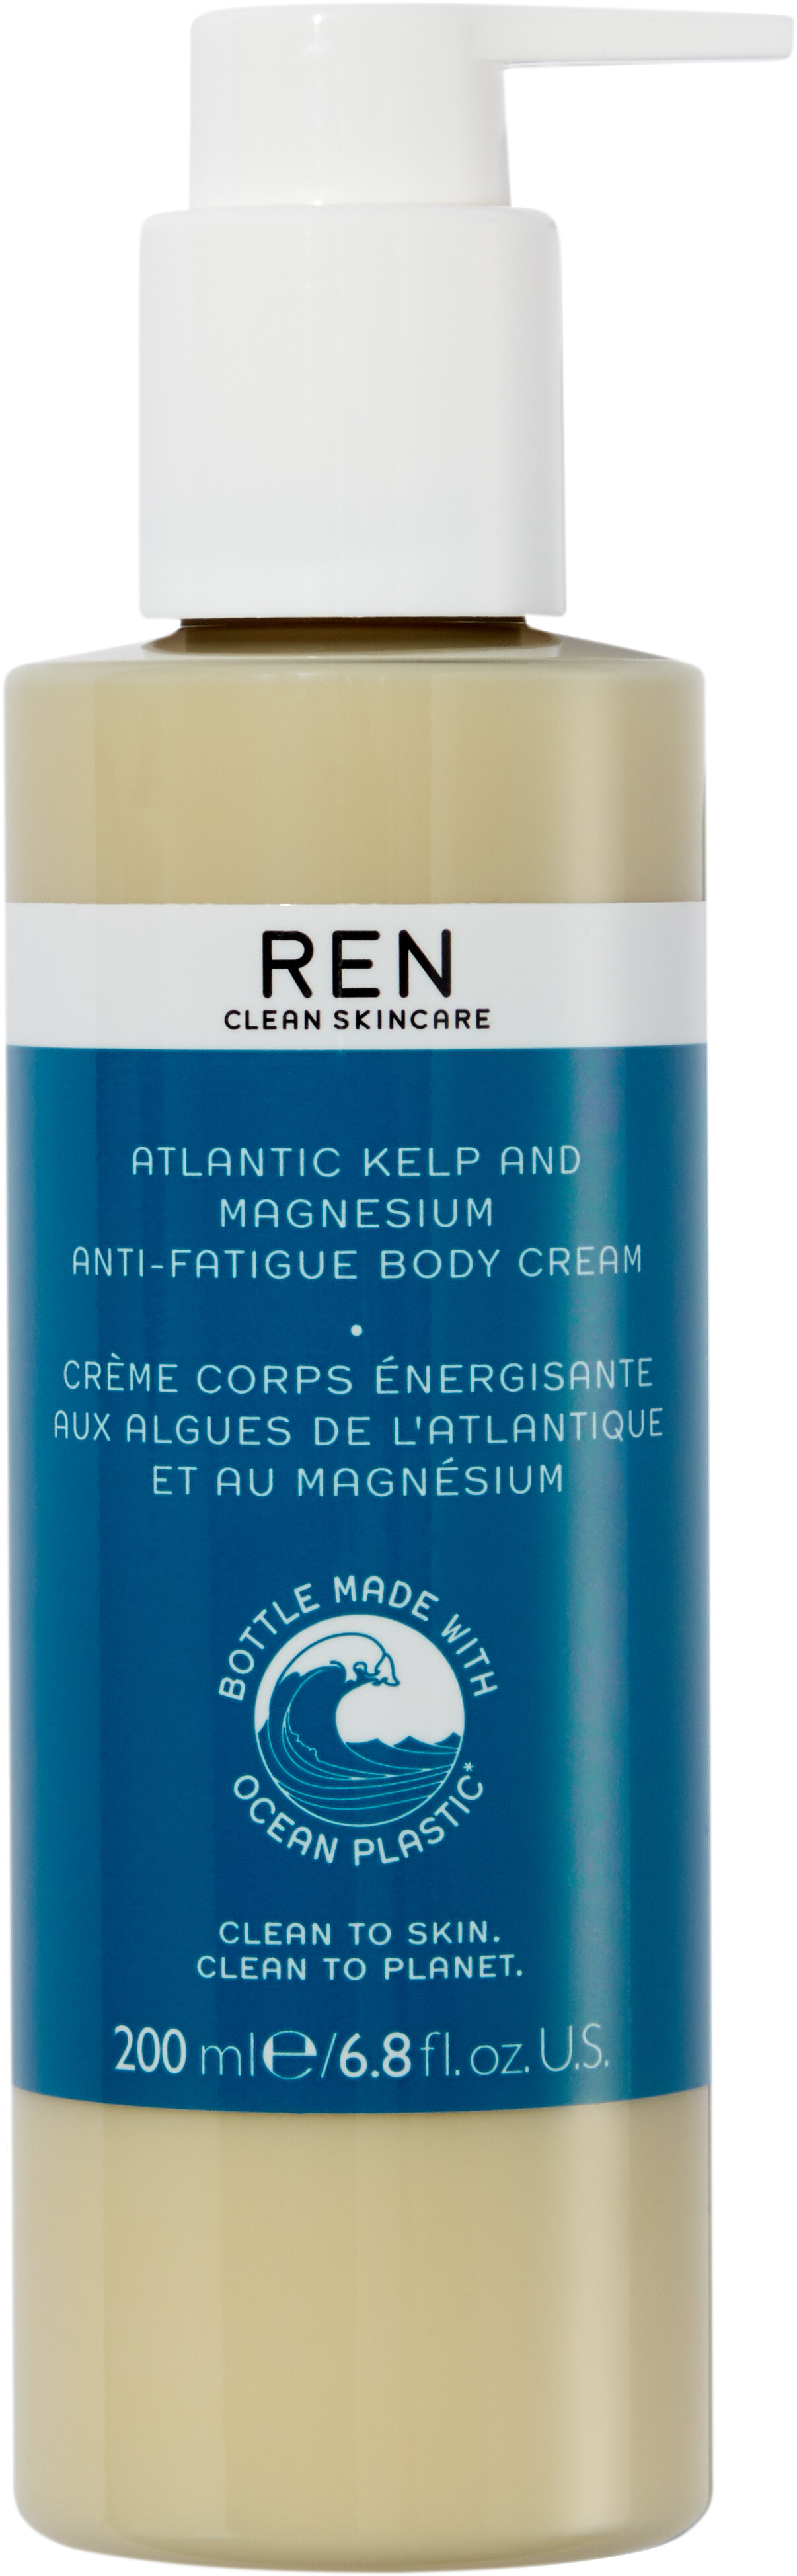 REN Atlantic Kelp and Magnesium Anti-Fatigue Body Cream 200ml